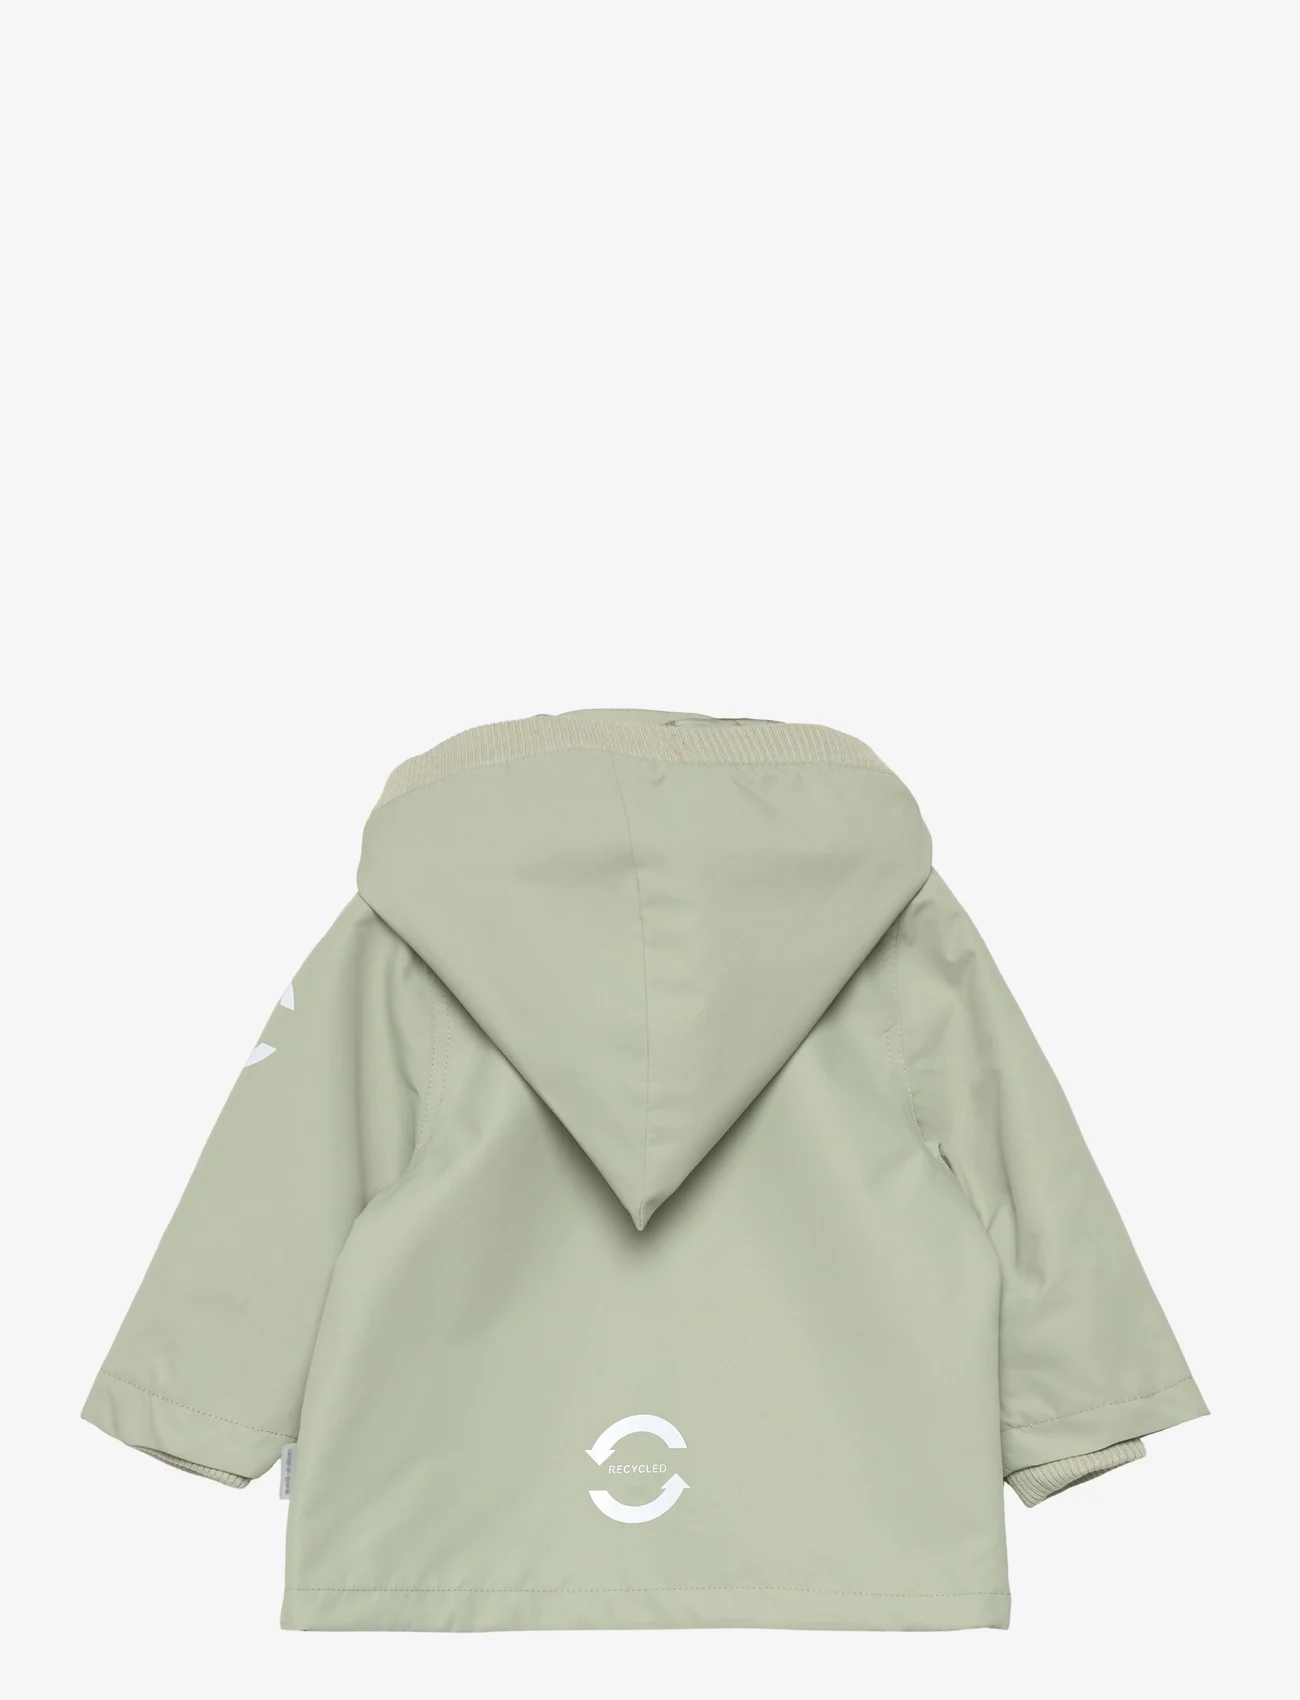 mikk-line - Polyester Baby Jacket - anoraks - desert sage - 1